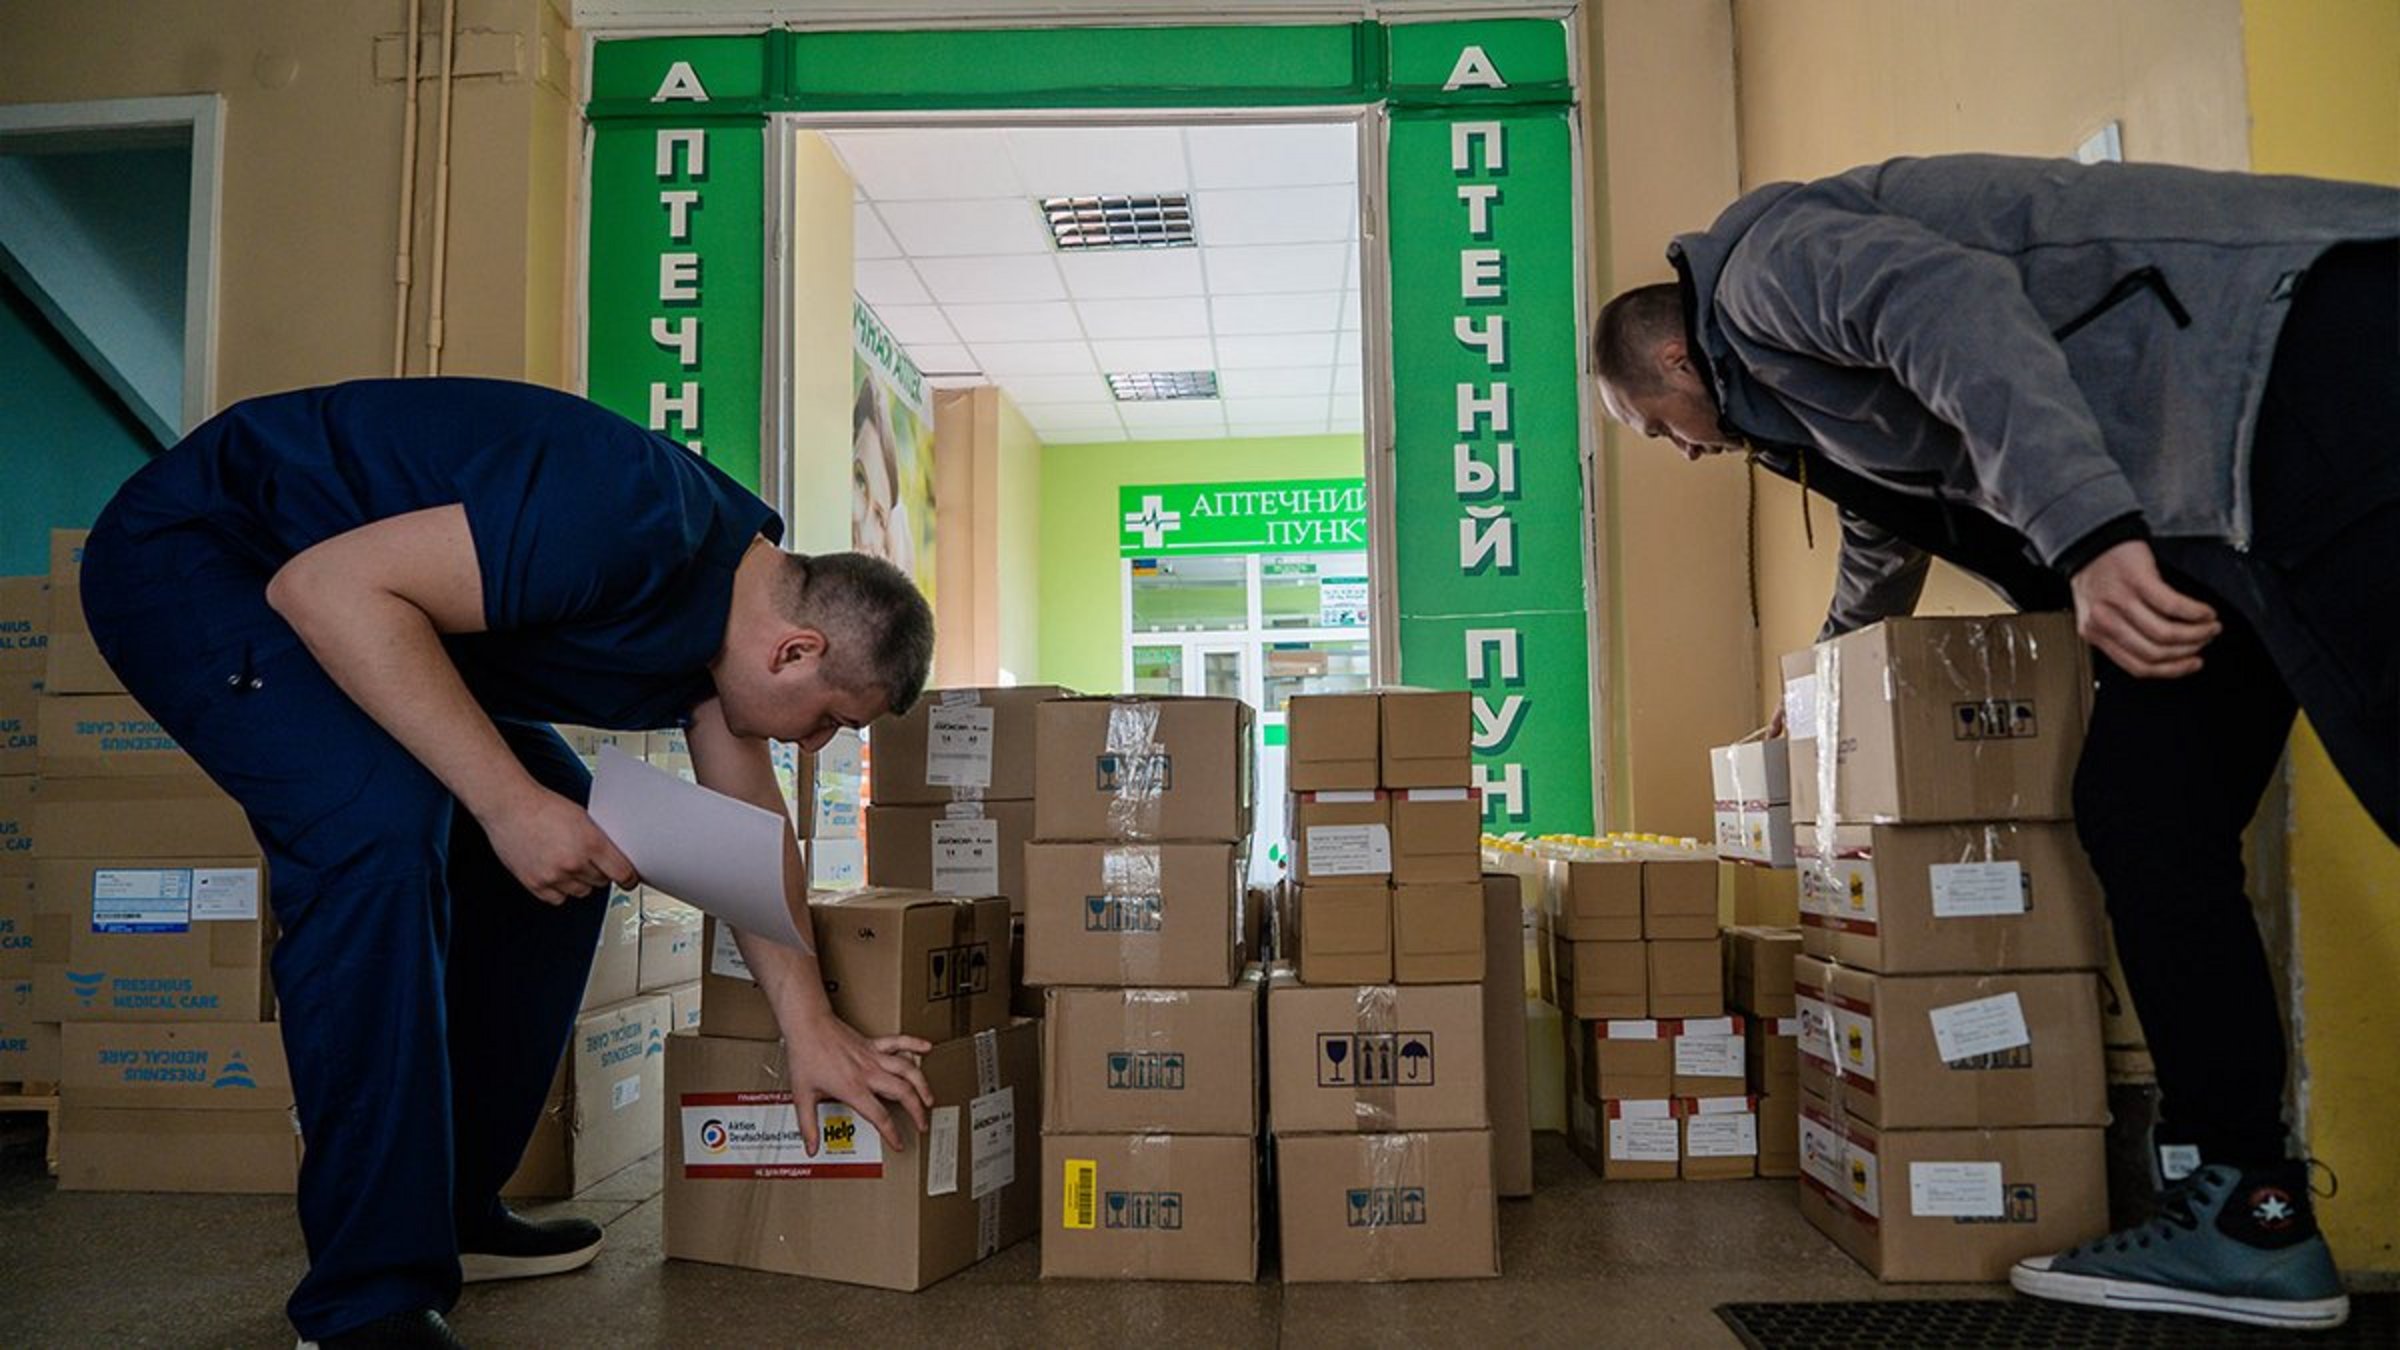 Zwei Krankenhausmitarbeiter in Charkiw nehmen eine Medikamentenlieferung von Help an